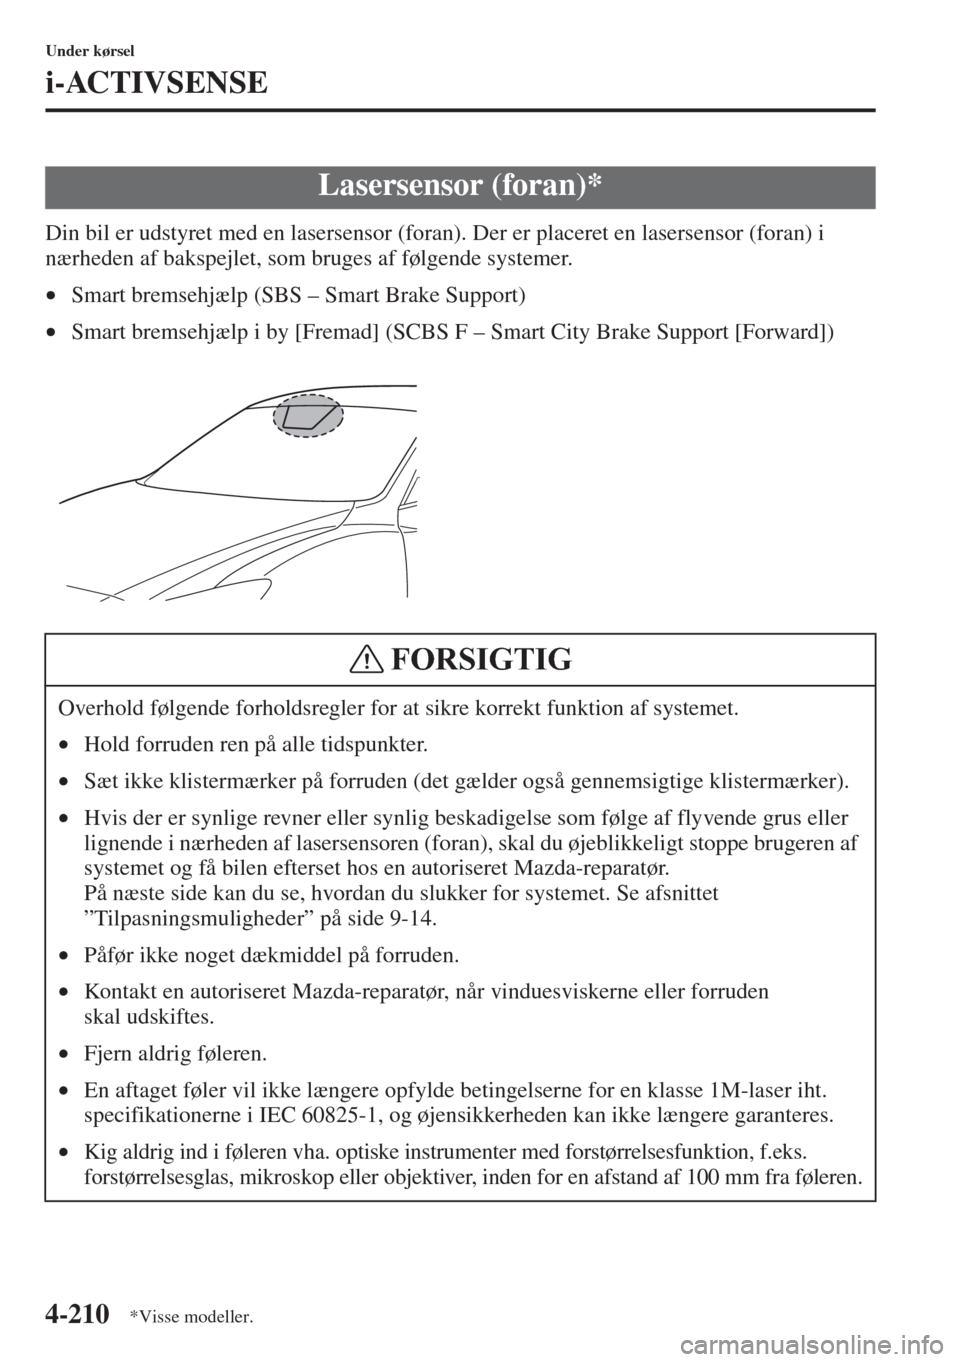 MAZDA MODEL 6 2015  Instruktionsbog (in Danish) 4-210
Under kørsel
i-ACTIVSENSE
Din bil er udstyret med en lasersensor (foran). Der er placeret en lasersensor (foran) i 
nærheden af bakspejlet, som bruges af følgende systemer.
•Smart bremsehj�